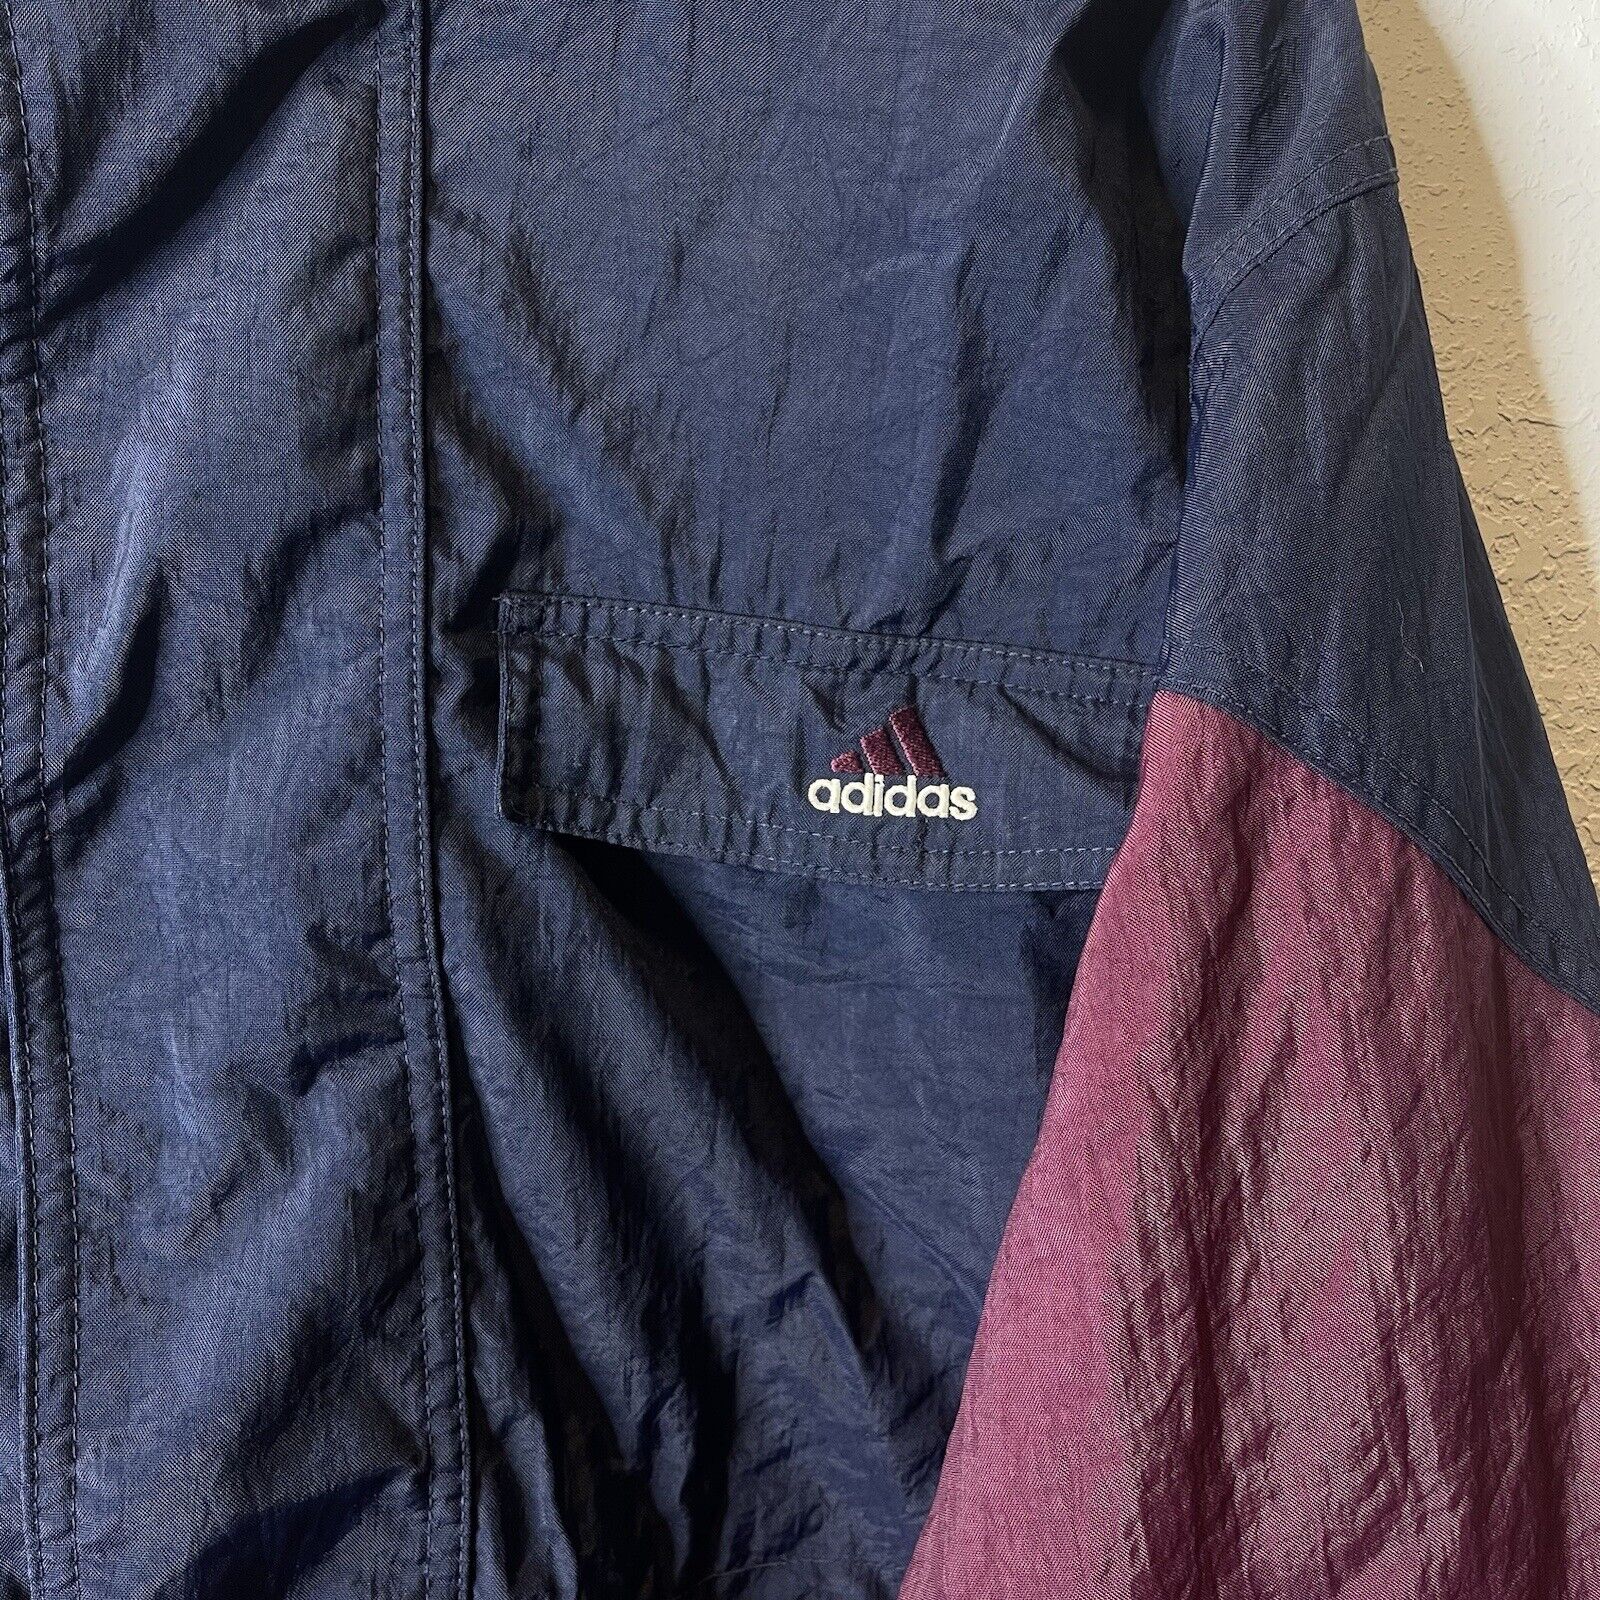 Adidas Two Tone Vintage Shell Jacket Full Zip Siz… - image 2